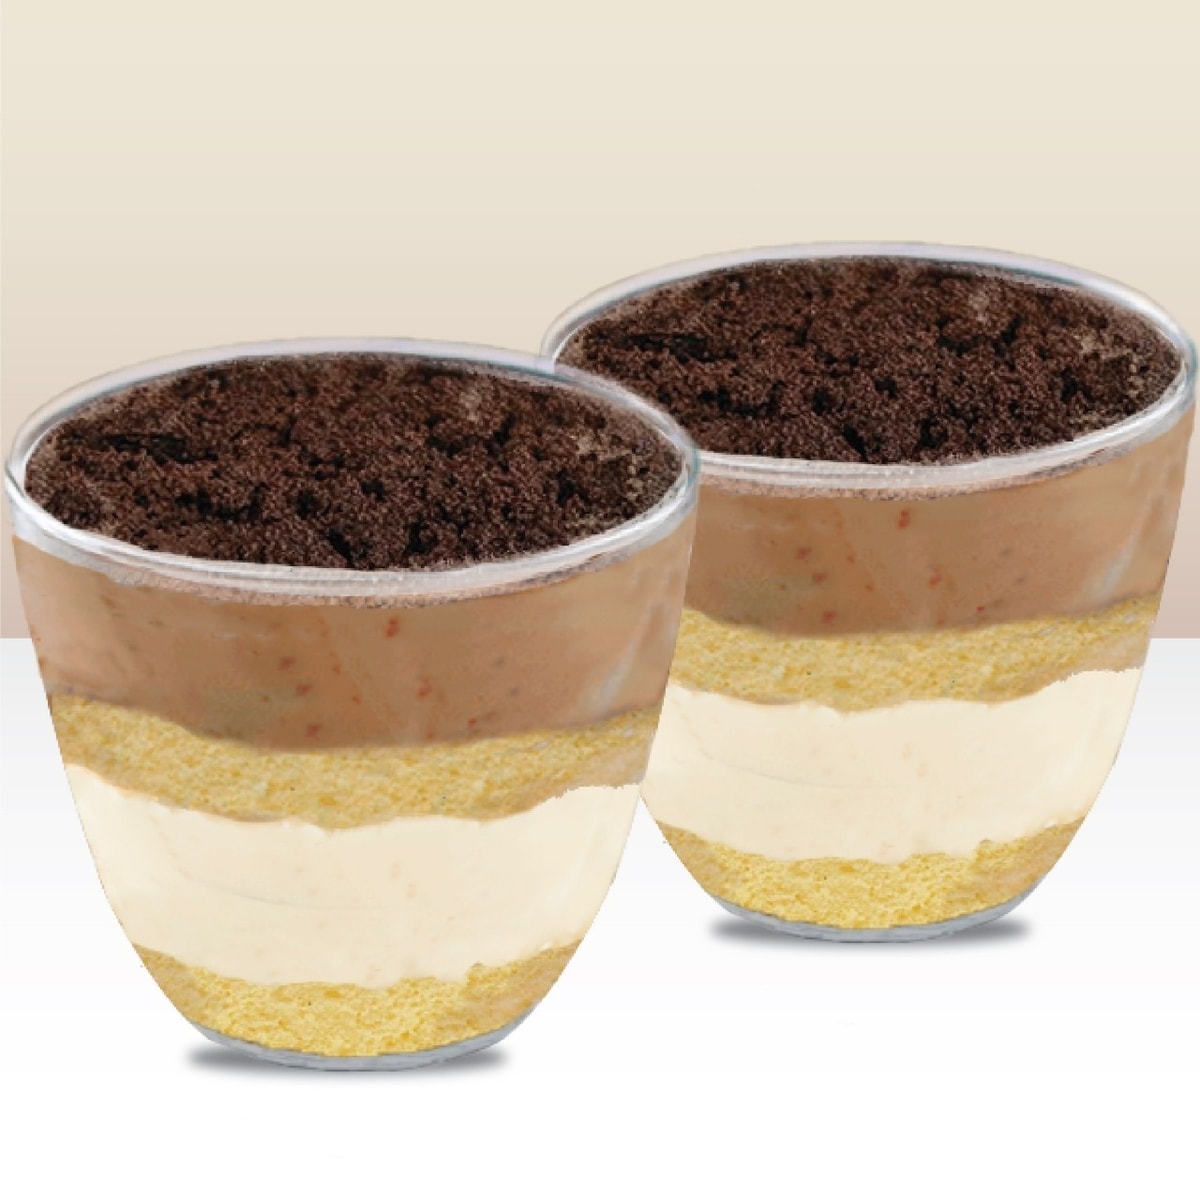 Сыр для тирамису 10 букв сканворд. Мороженое со вкусом тирамису с шоколадным печеньем. Dessert Cup. Фейерверк тирамису. Round Dessert Cup.